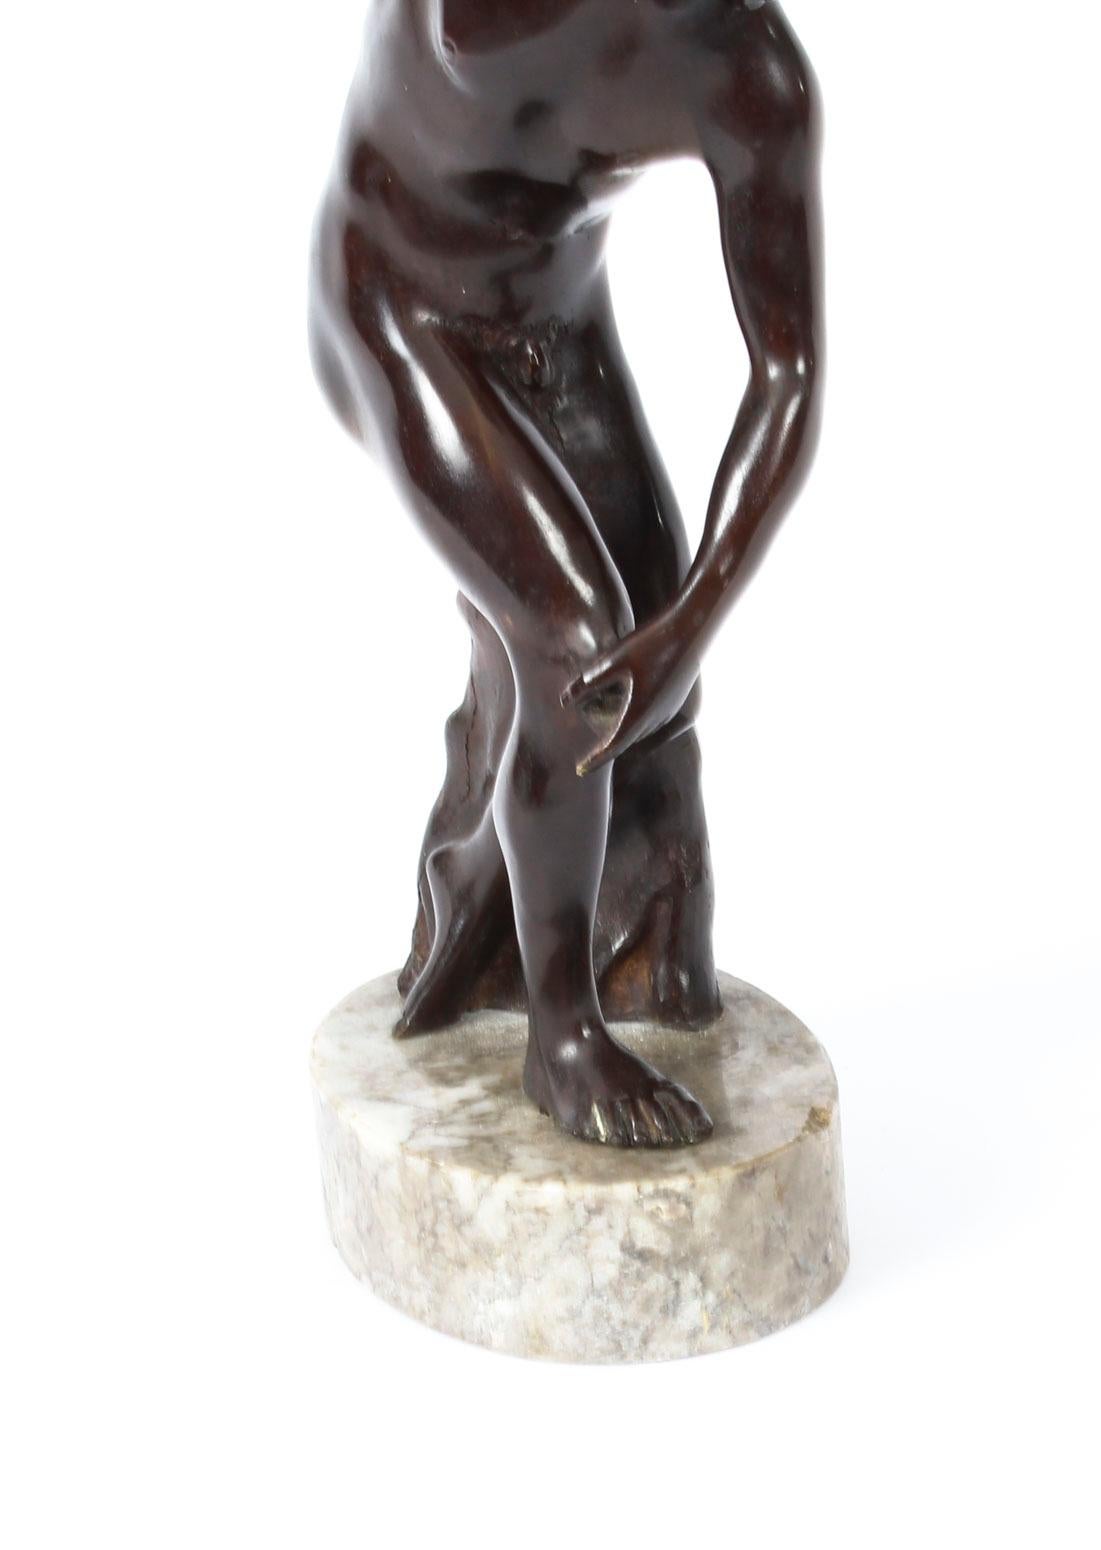 Antique Bronze Grand Tour Sculpture Discus Thrower Athlete, 19th Century 3